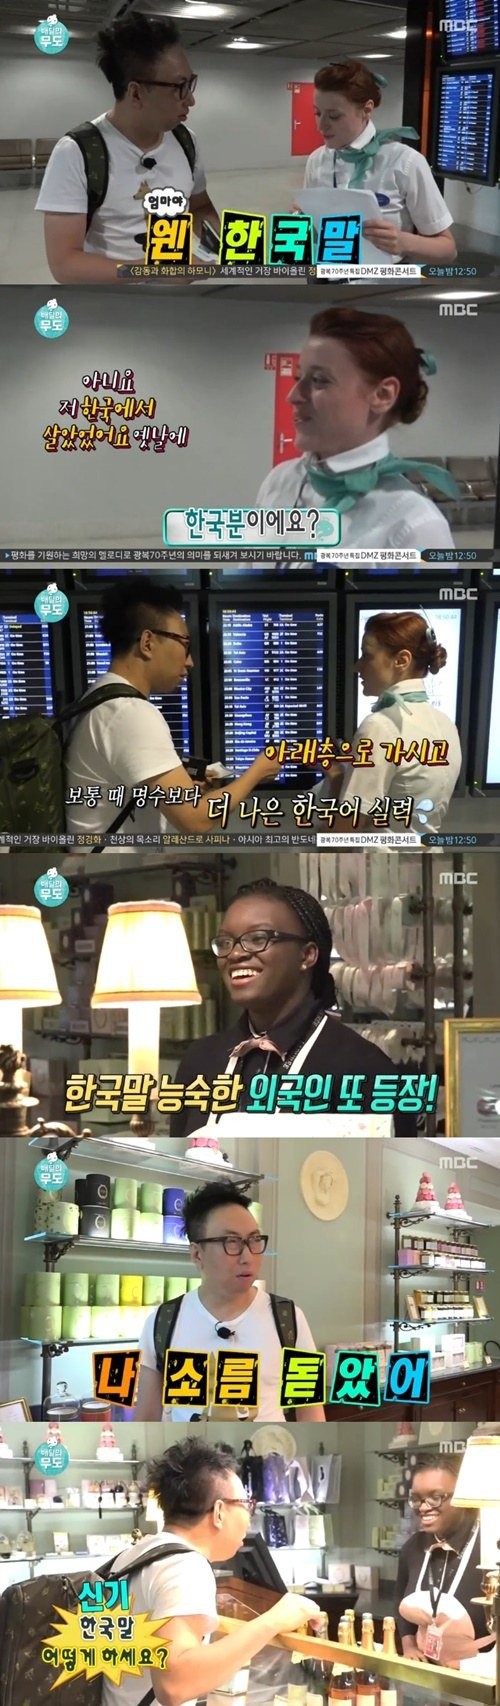 >朴明秀语录 《无限挑战》朴明秀被巴黎乘务员和店员流利韩语惊呆!